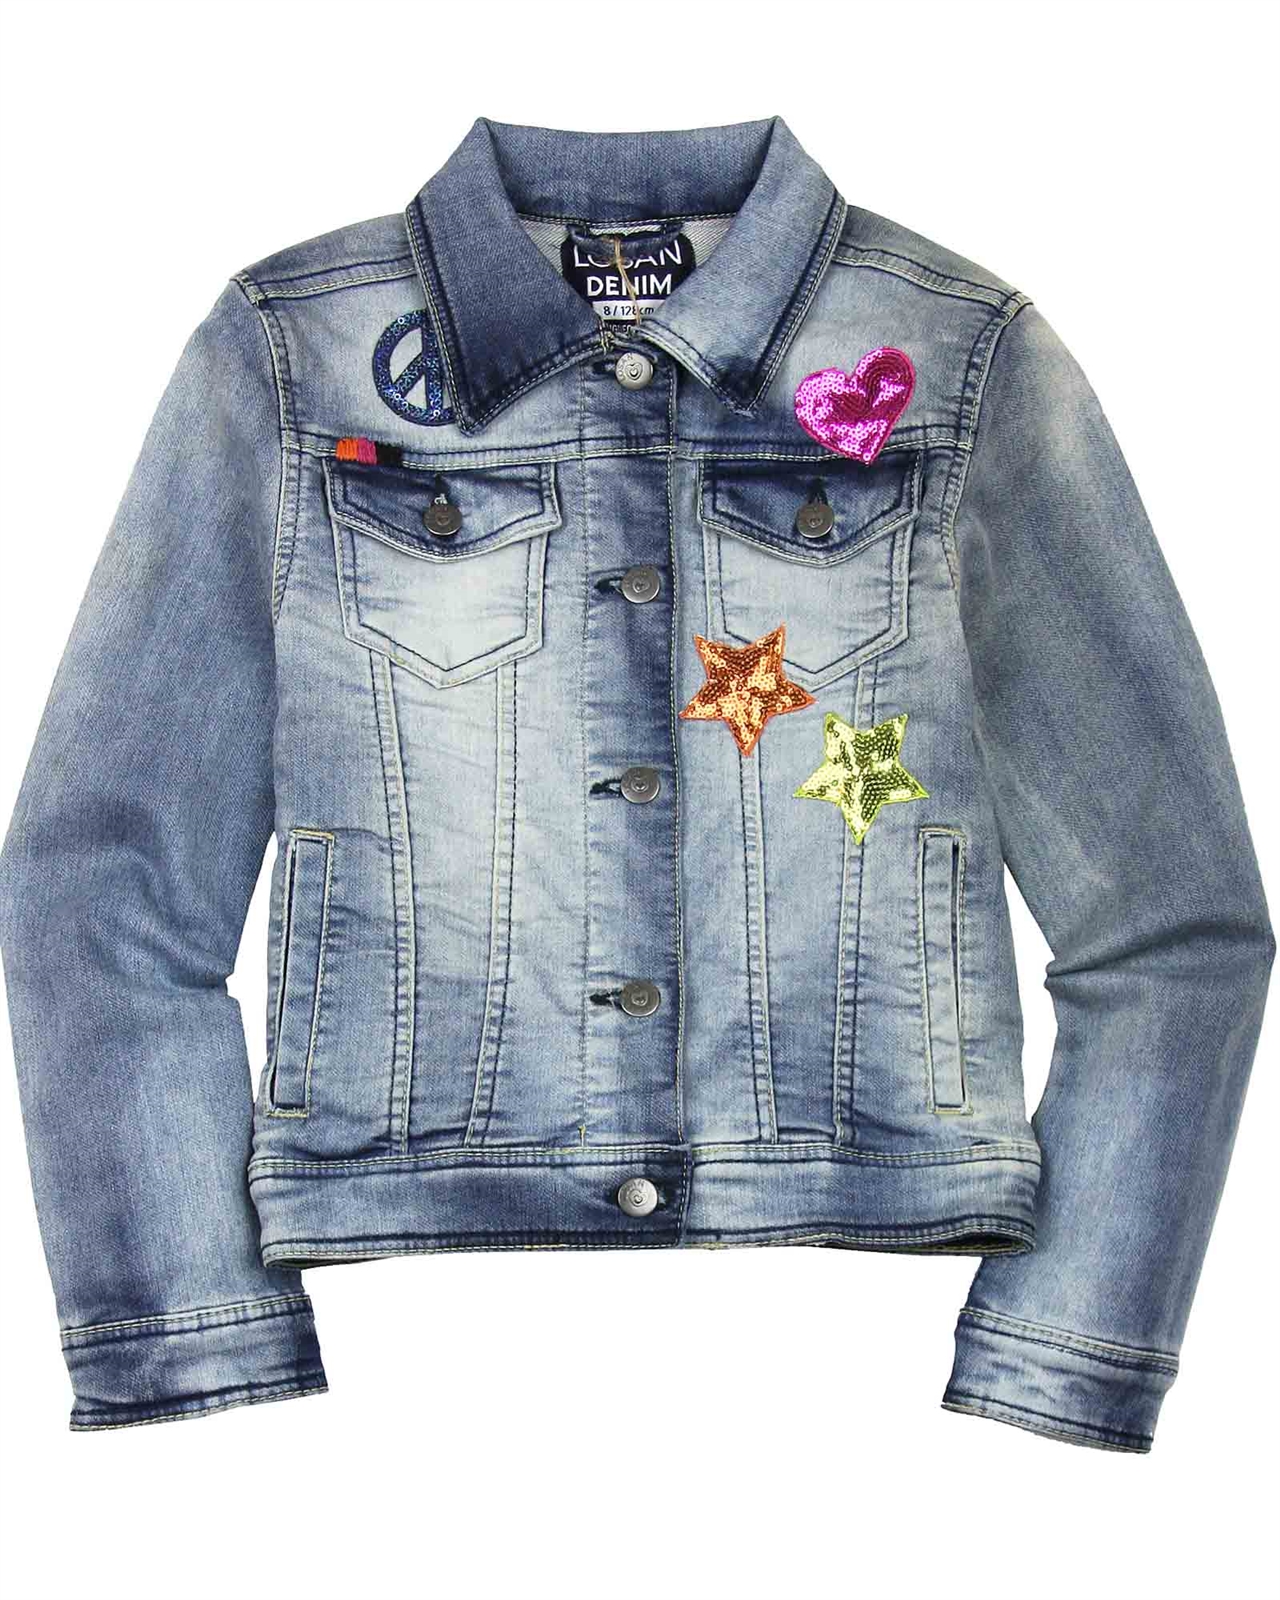 girls jean jacket